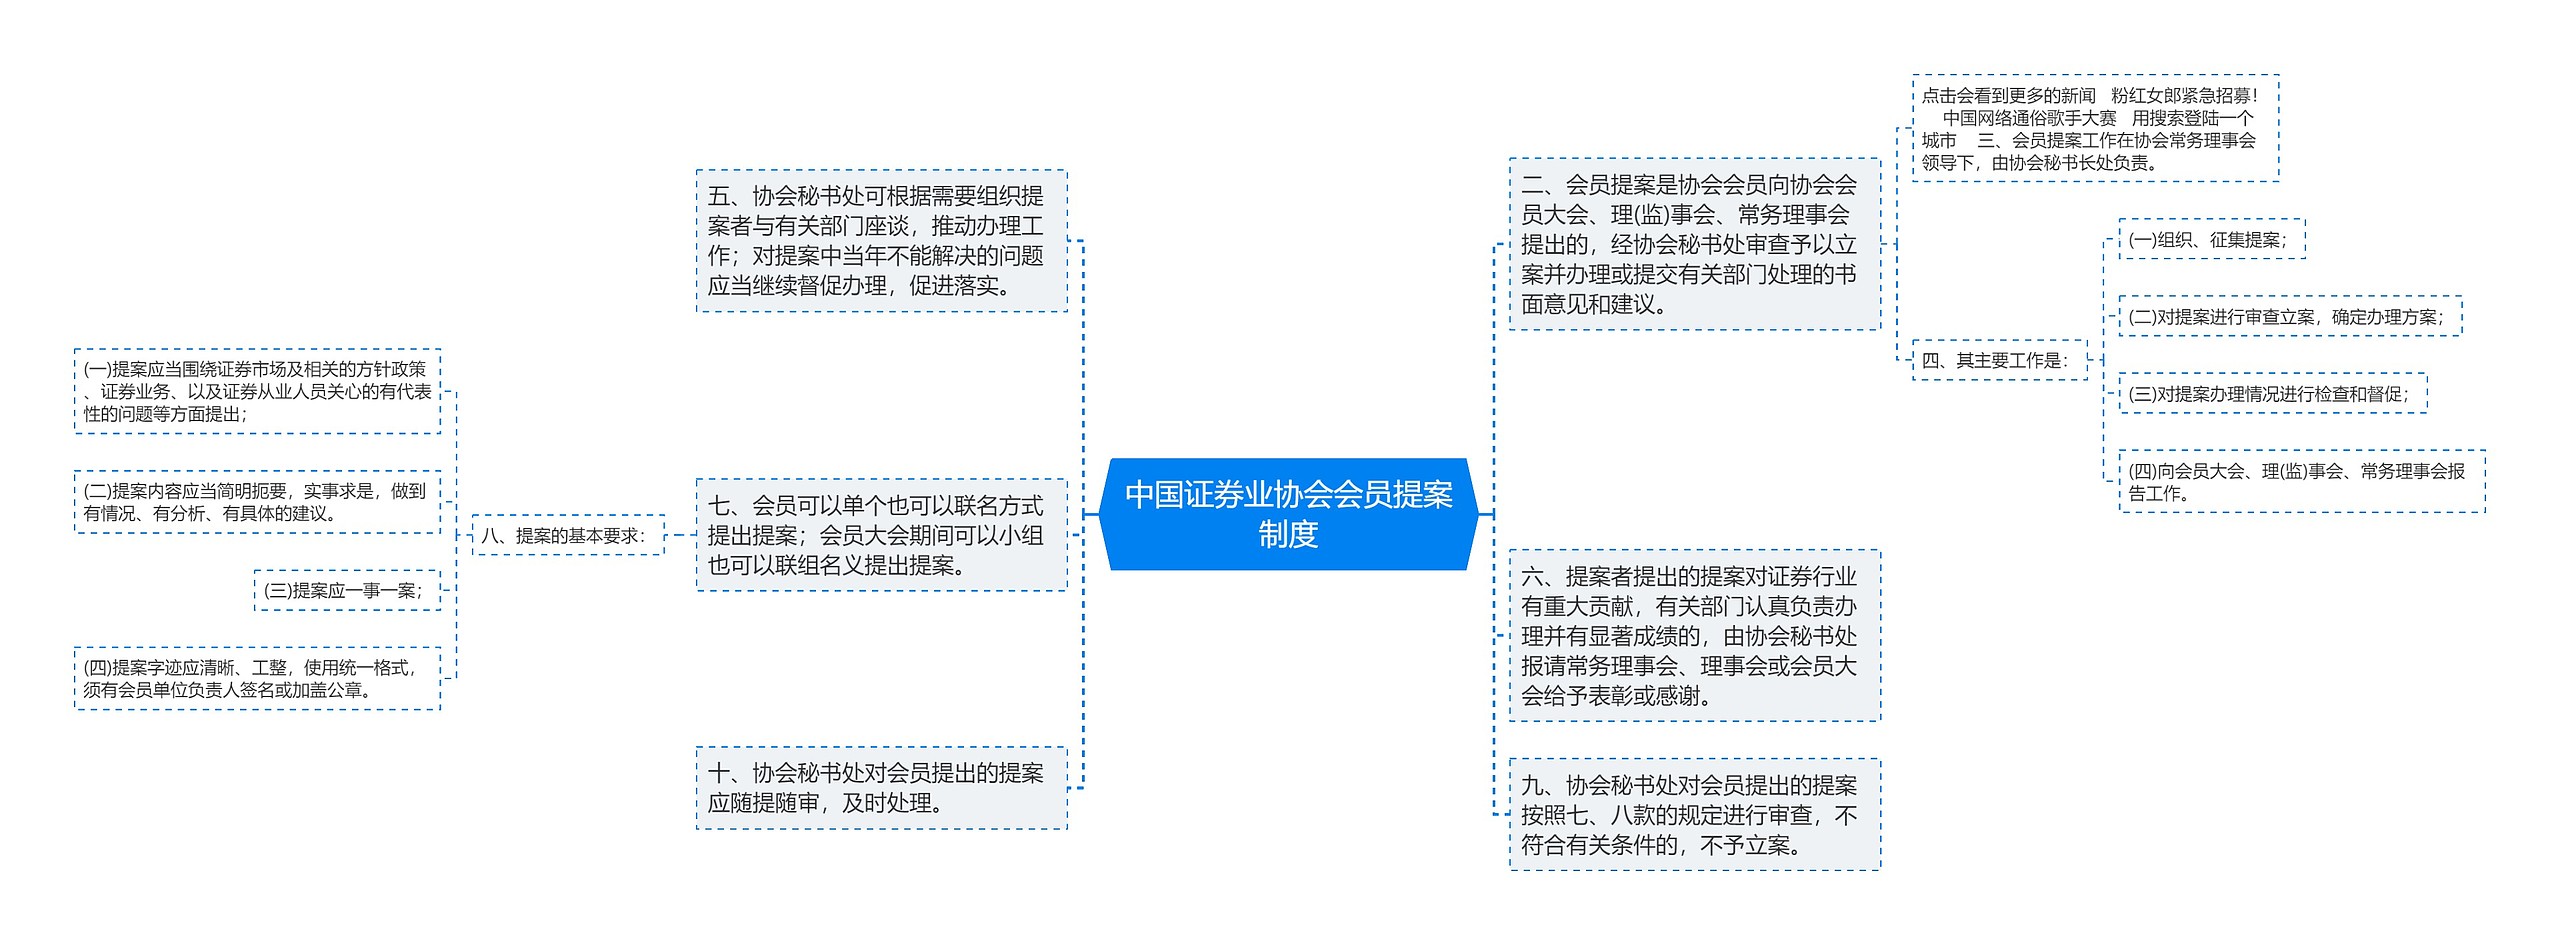 中国证券业协会会员提案制度思维导图